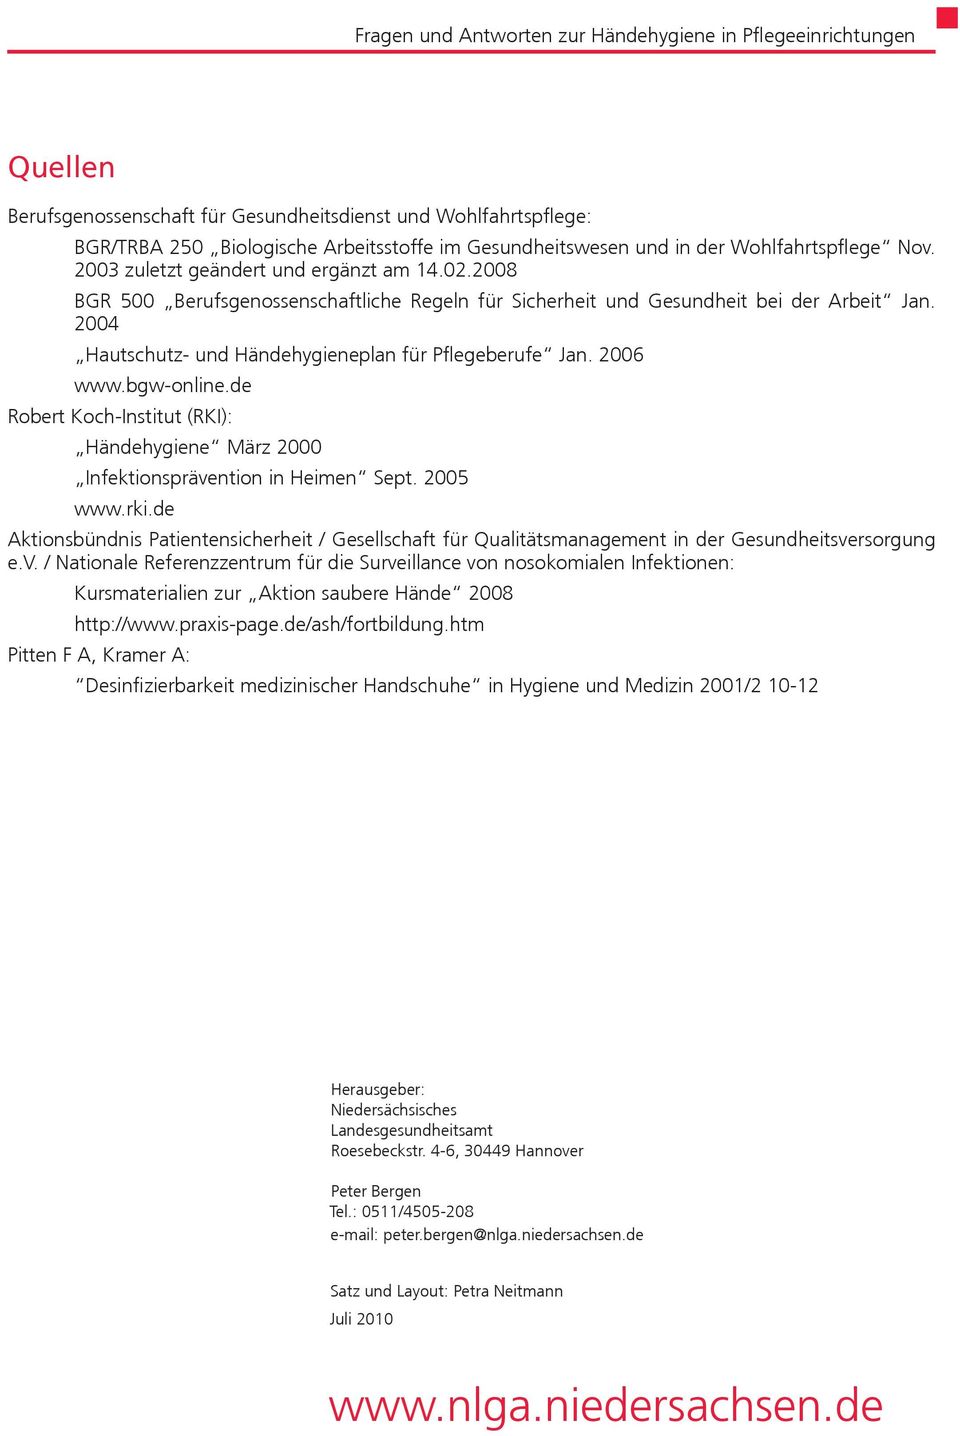 2006 www.bgw-online.de Robert Koch-Institut (RKI): Händehygiene März 2000 Infektionsprävention in Heimen Sept. 2005 www.rki.